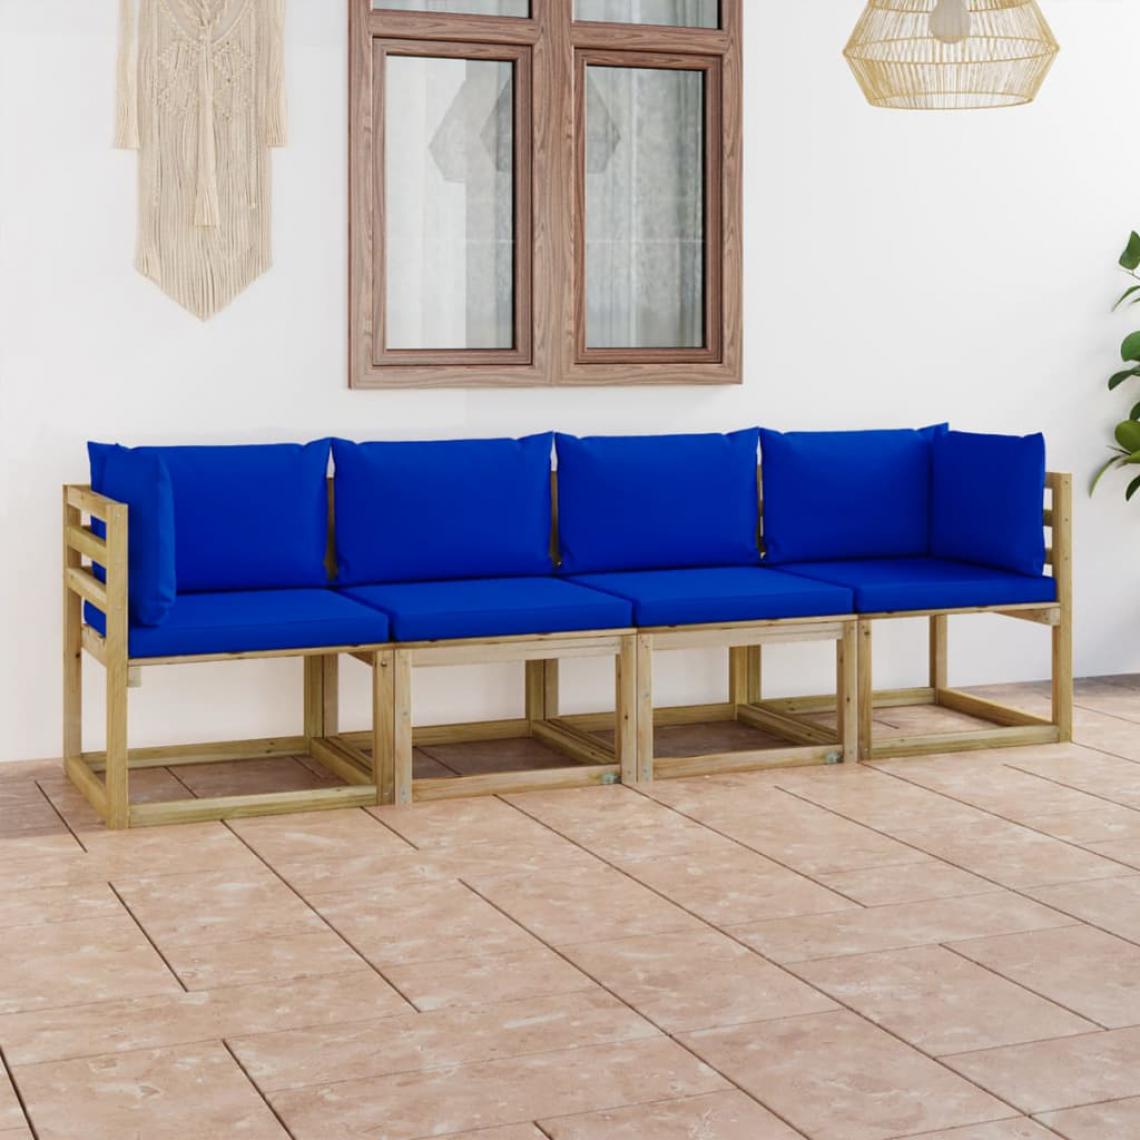 Chunhelife - Canapé de jardin 4 places avec coussins bleu - Ensembles canapés et fauteuils